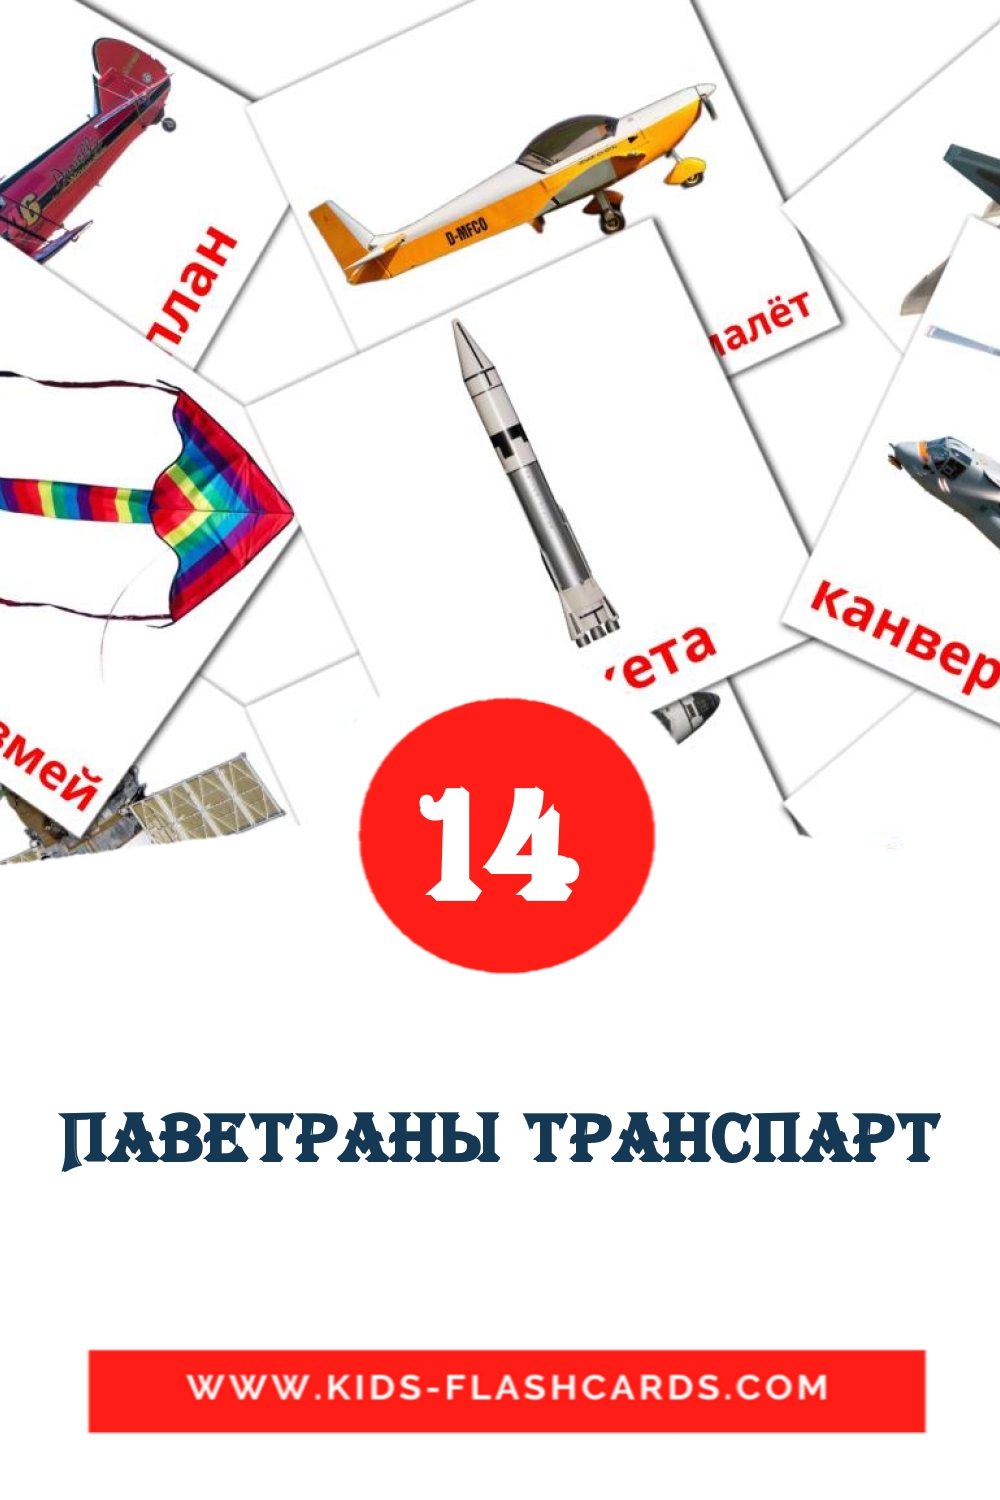 14 Cartões com Imagens de Паветраны транспарт para Jardim de Infância em bielorrusso